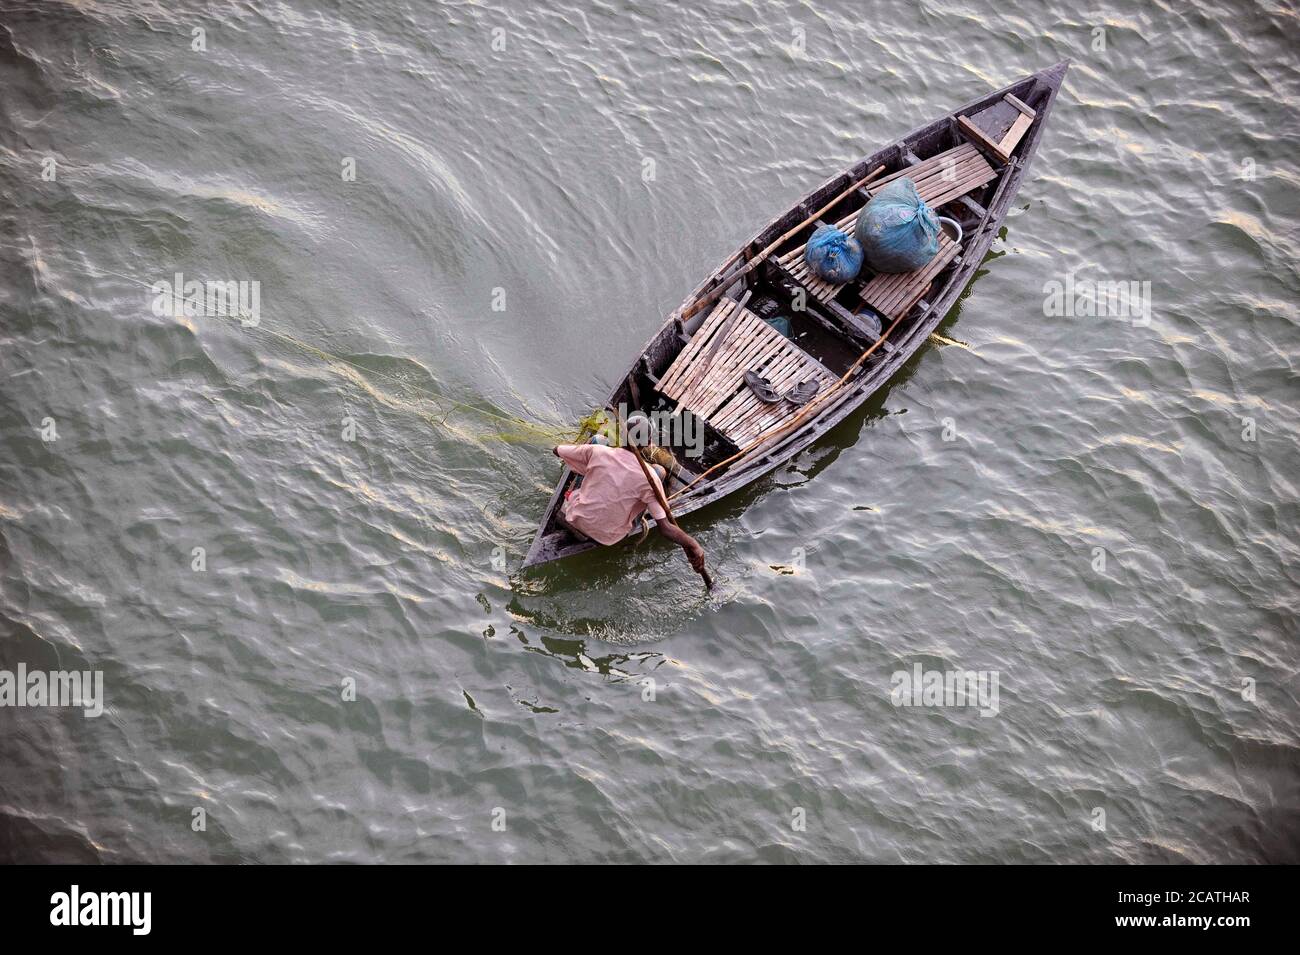 Un pescador vio tratando de pescar algunos peces. En el delta de los ríos Ganga (Padma), Brahmaputra y Meghna viven en el agua. Foto de stock